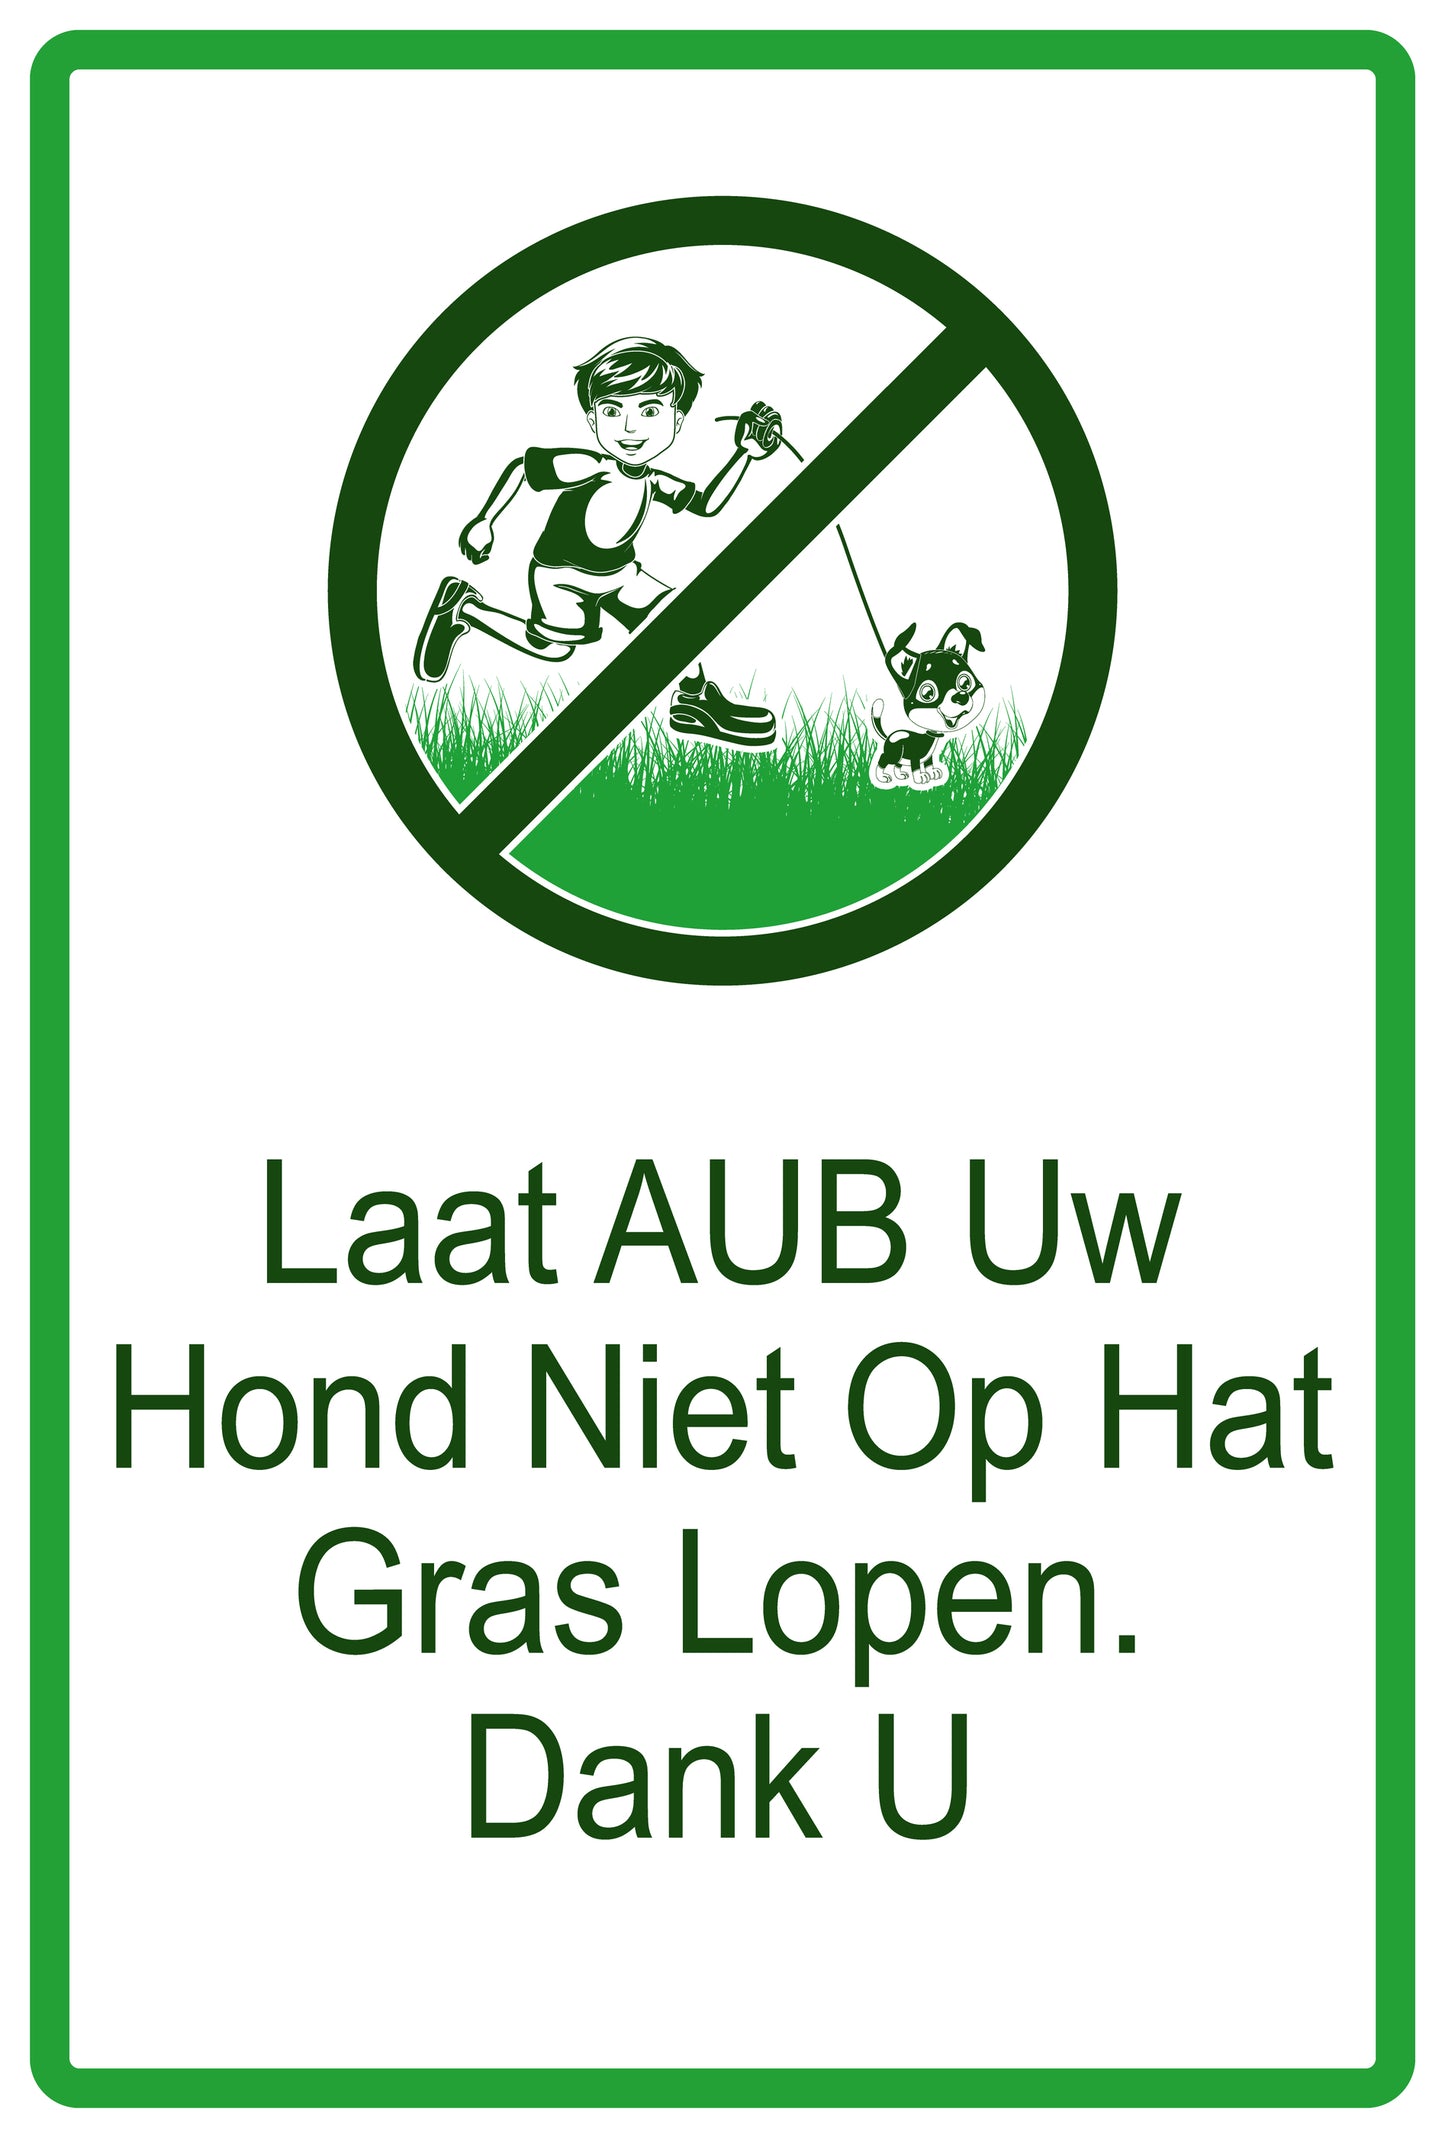 Sticker "Laat AUB Uw Hond Niet Op Hat Gras Lopen. Dank U" 10-60 cm van PVC-kunststof, EW-KEEPOFFGRASS-V-12300-54